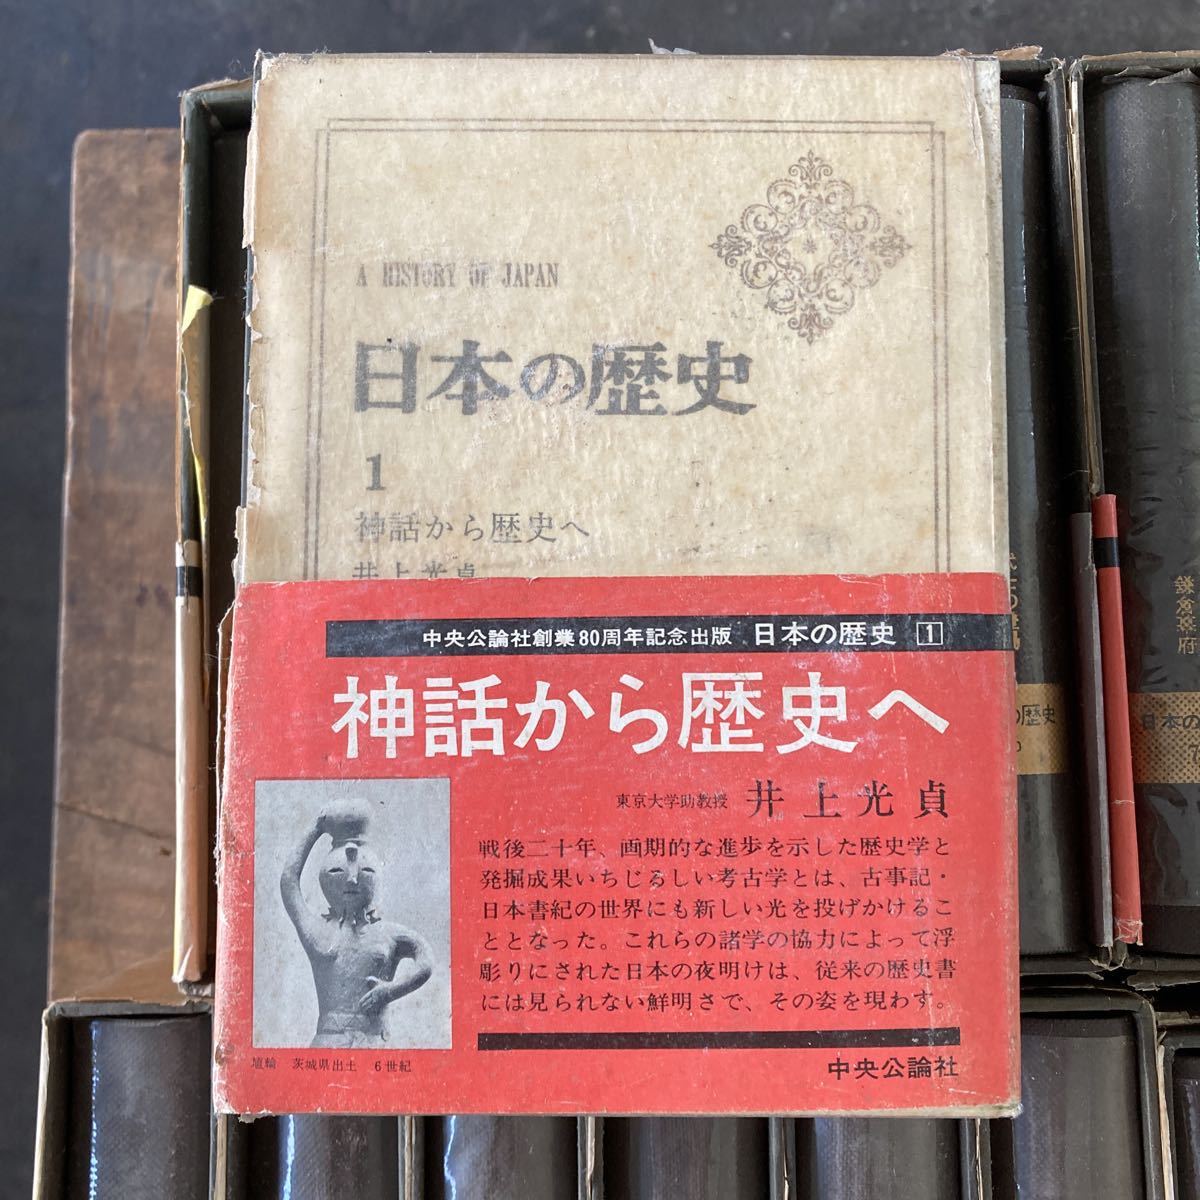  центр . теория фирма создание 80 anniversary commemoration японская история Inoue свет . почти первая версия 1-26 все тома в комплекте Showa старая книга .. товар материалы 